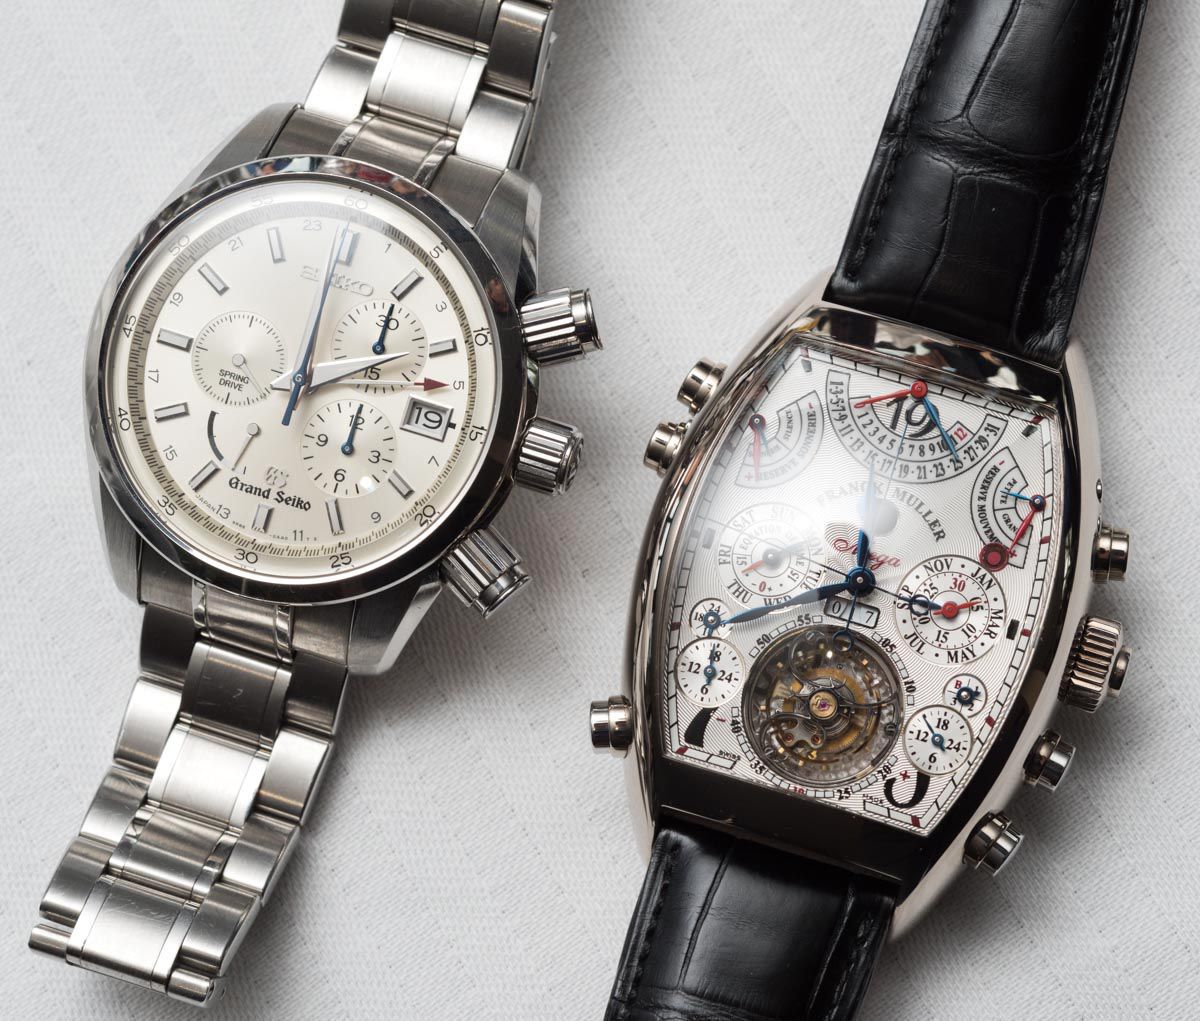 Chuyên nghiệp, tận tâm và minh bạch, tại Gia Bảo Luxury, quý khách hàng được thu mua đồng hồ Franck Muller Vanguard chính hãng đã qua sử dụng hay các thương hiệu lớn với mức giá tốt nhất, cạnh tranh thị trường